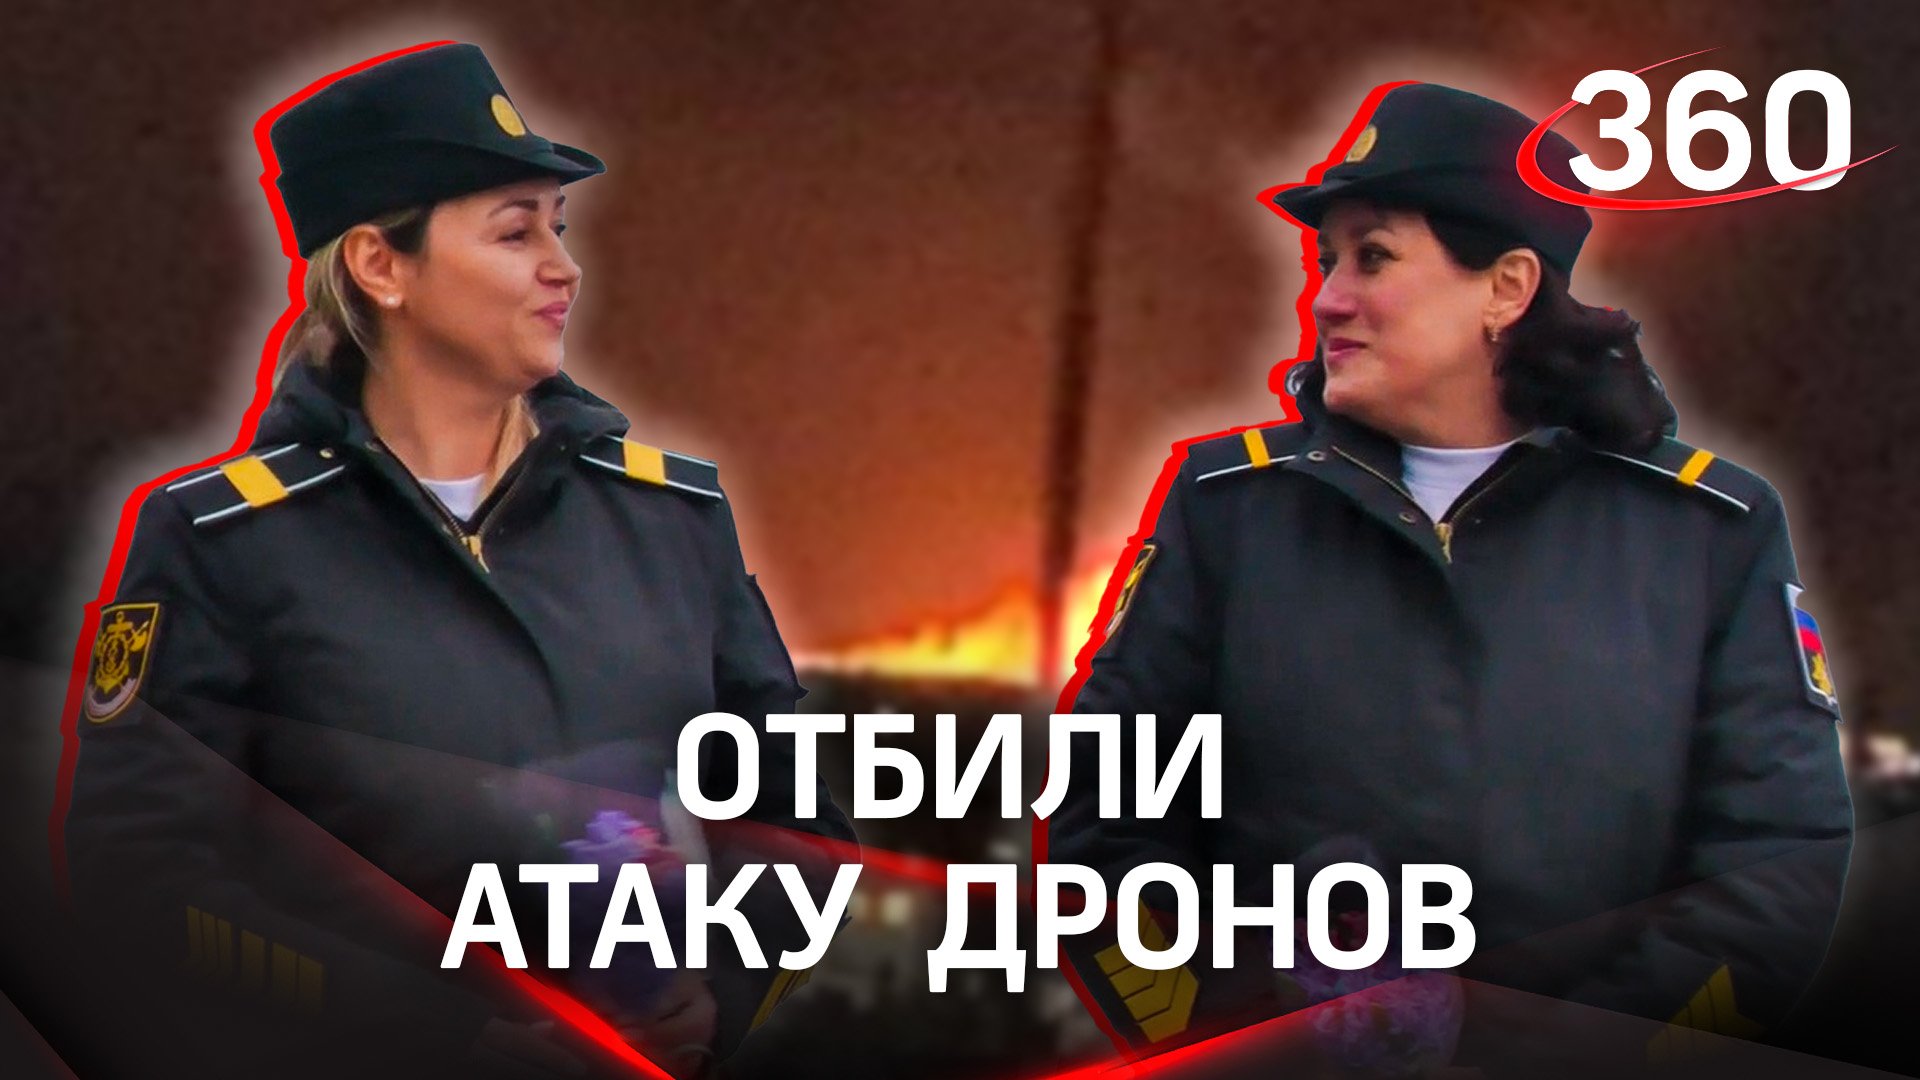 Отбили атаку дронов. Женщины морфлота | Пилотов Су-27 наградили после инцидента с беспилотником Reap